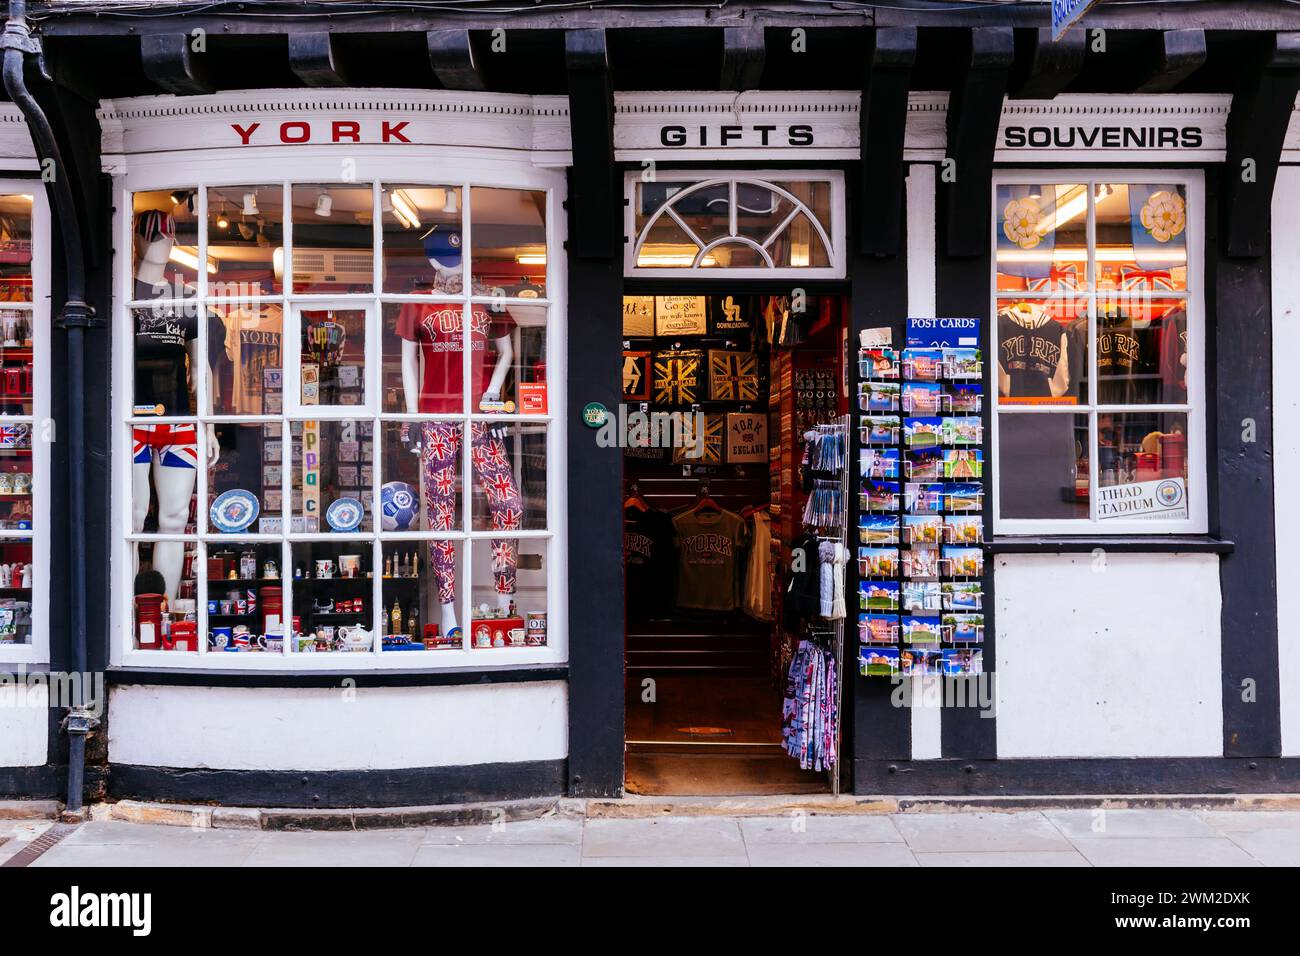 Boutique de cadeaux dans le bâtiment d'architecture Tudor. High Petergate Street. York, Yorkshire du Nord, Yorkshire et Humber, Angleterre, Royaume-Uni, Europe Banque D'Images